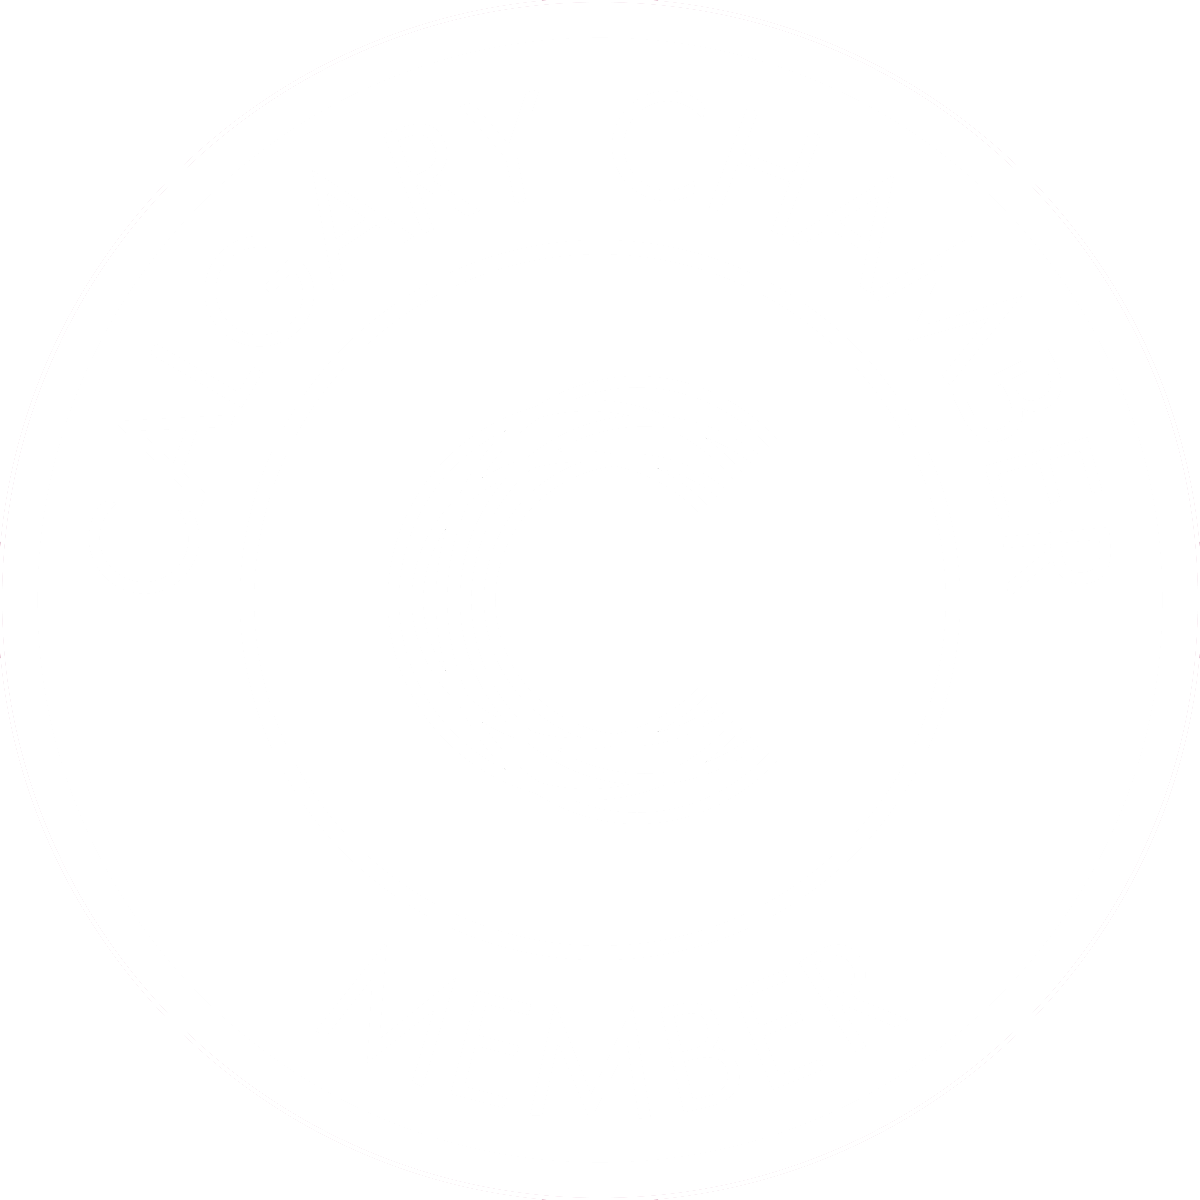 Calgary-Chamber-Of-Commerce-Member